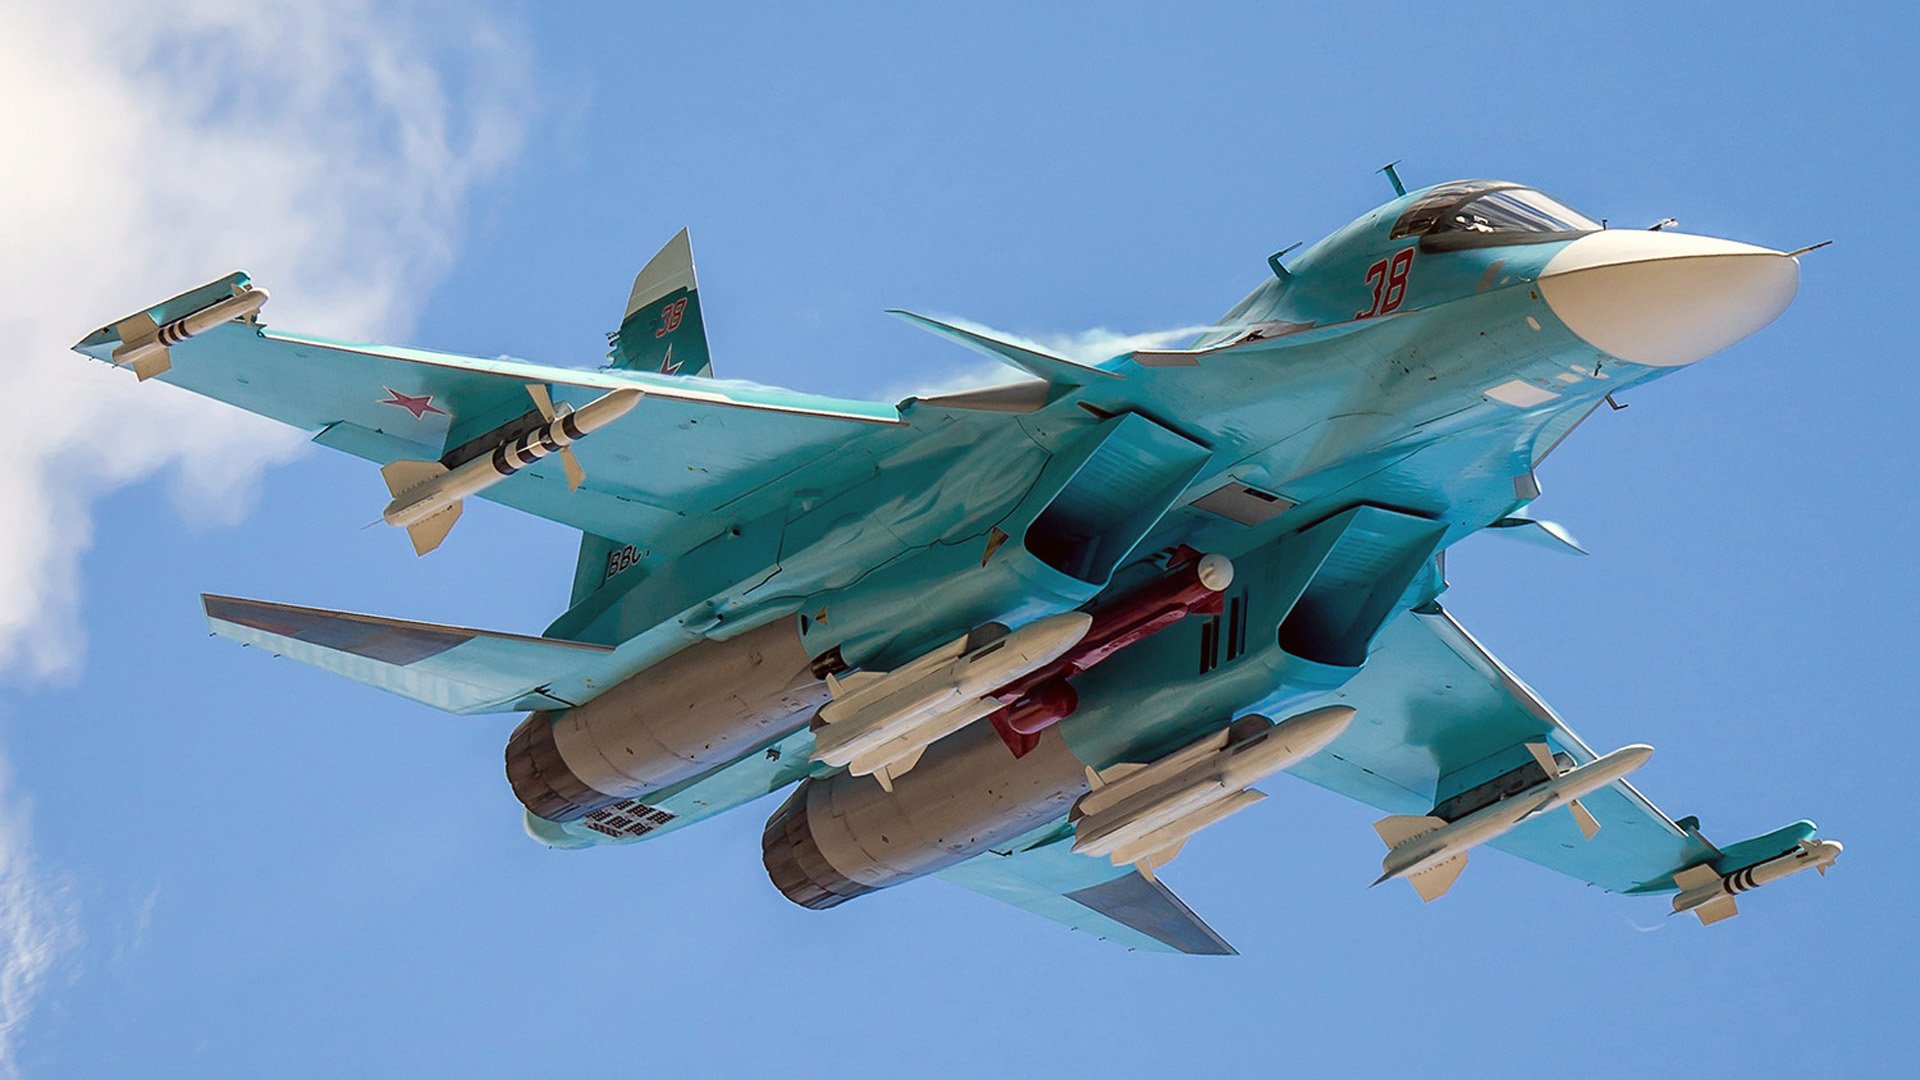 Απίστευτο βίντεο: Su-34 και αεροσκάφη An-26 προσγειώνονται σε αυτοκινητόδρομο στη Ρωσία!